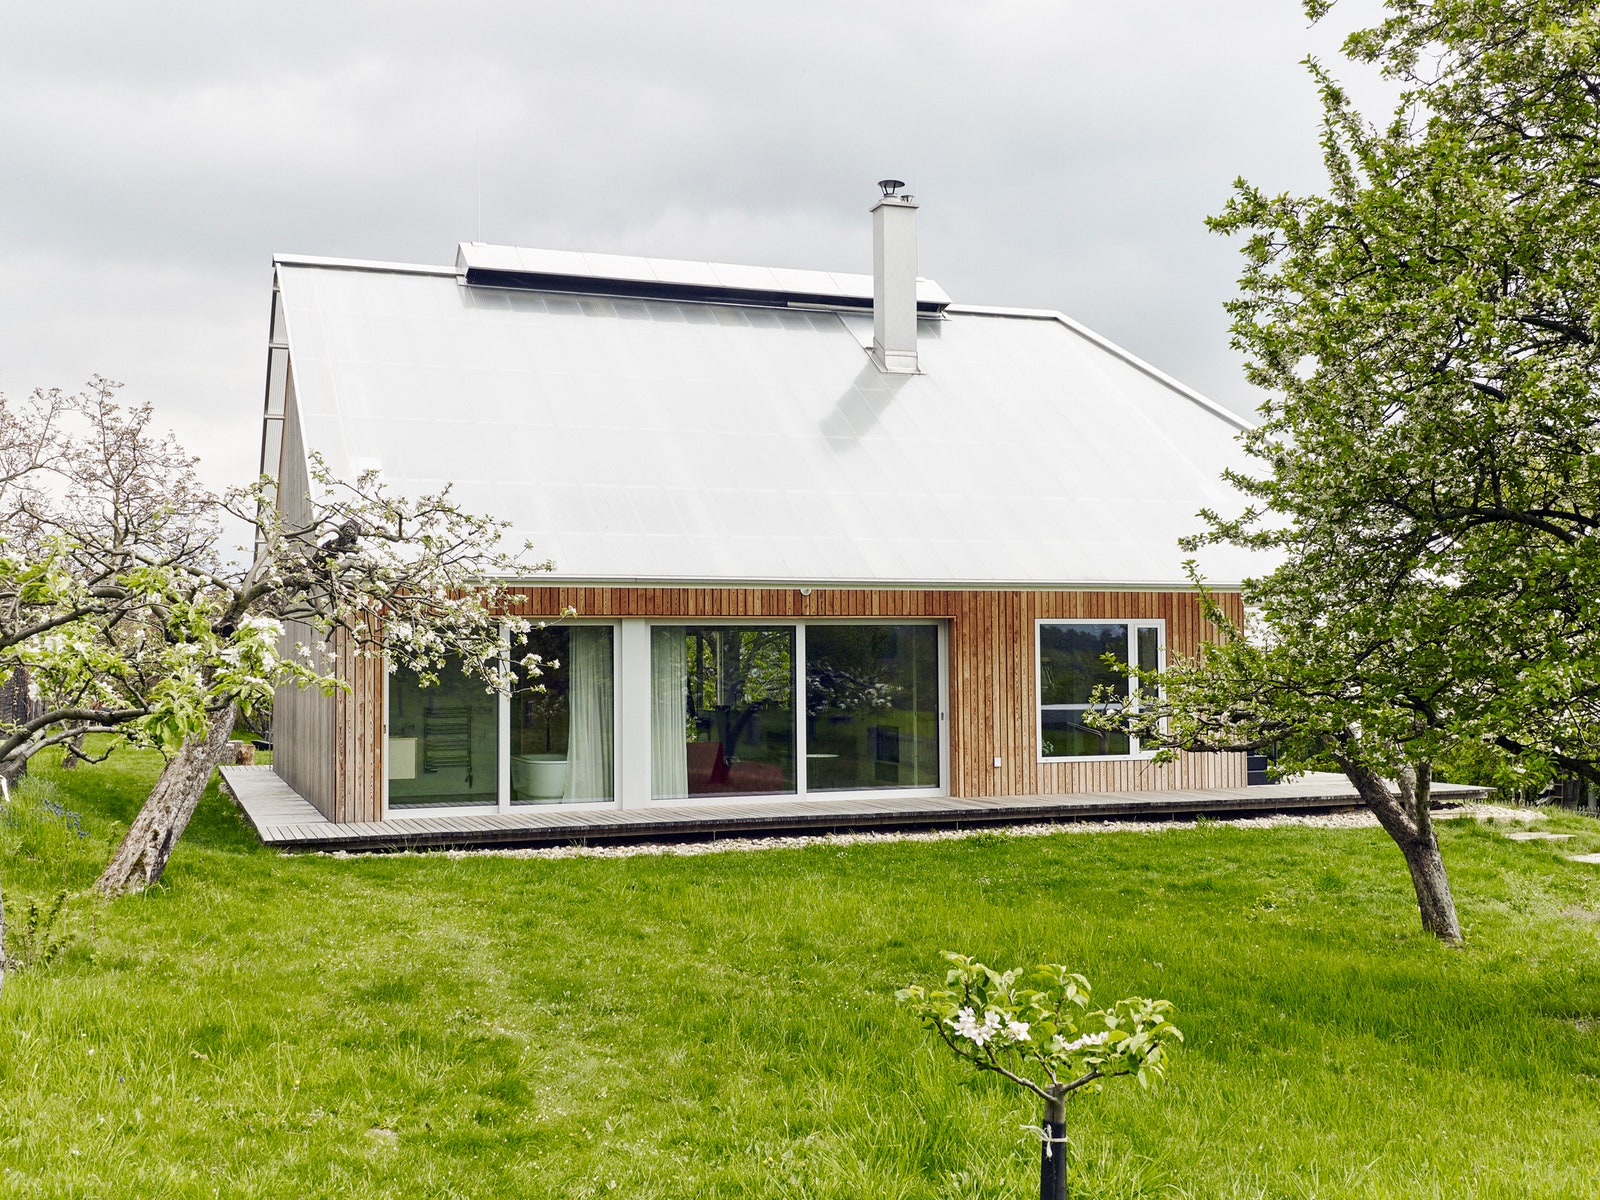 Дом с теплицей на крыше в Чехии